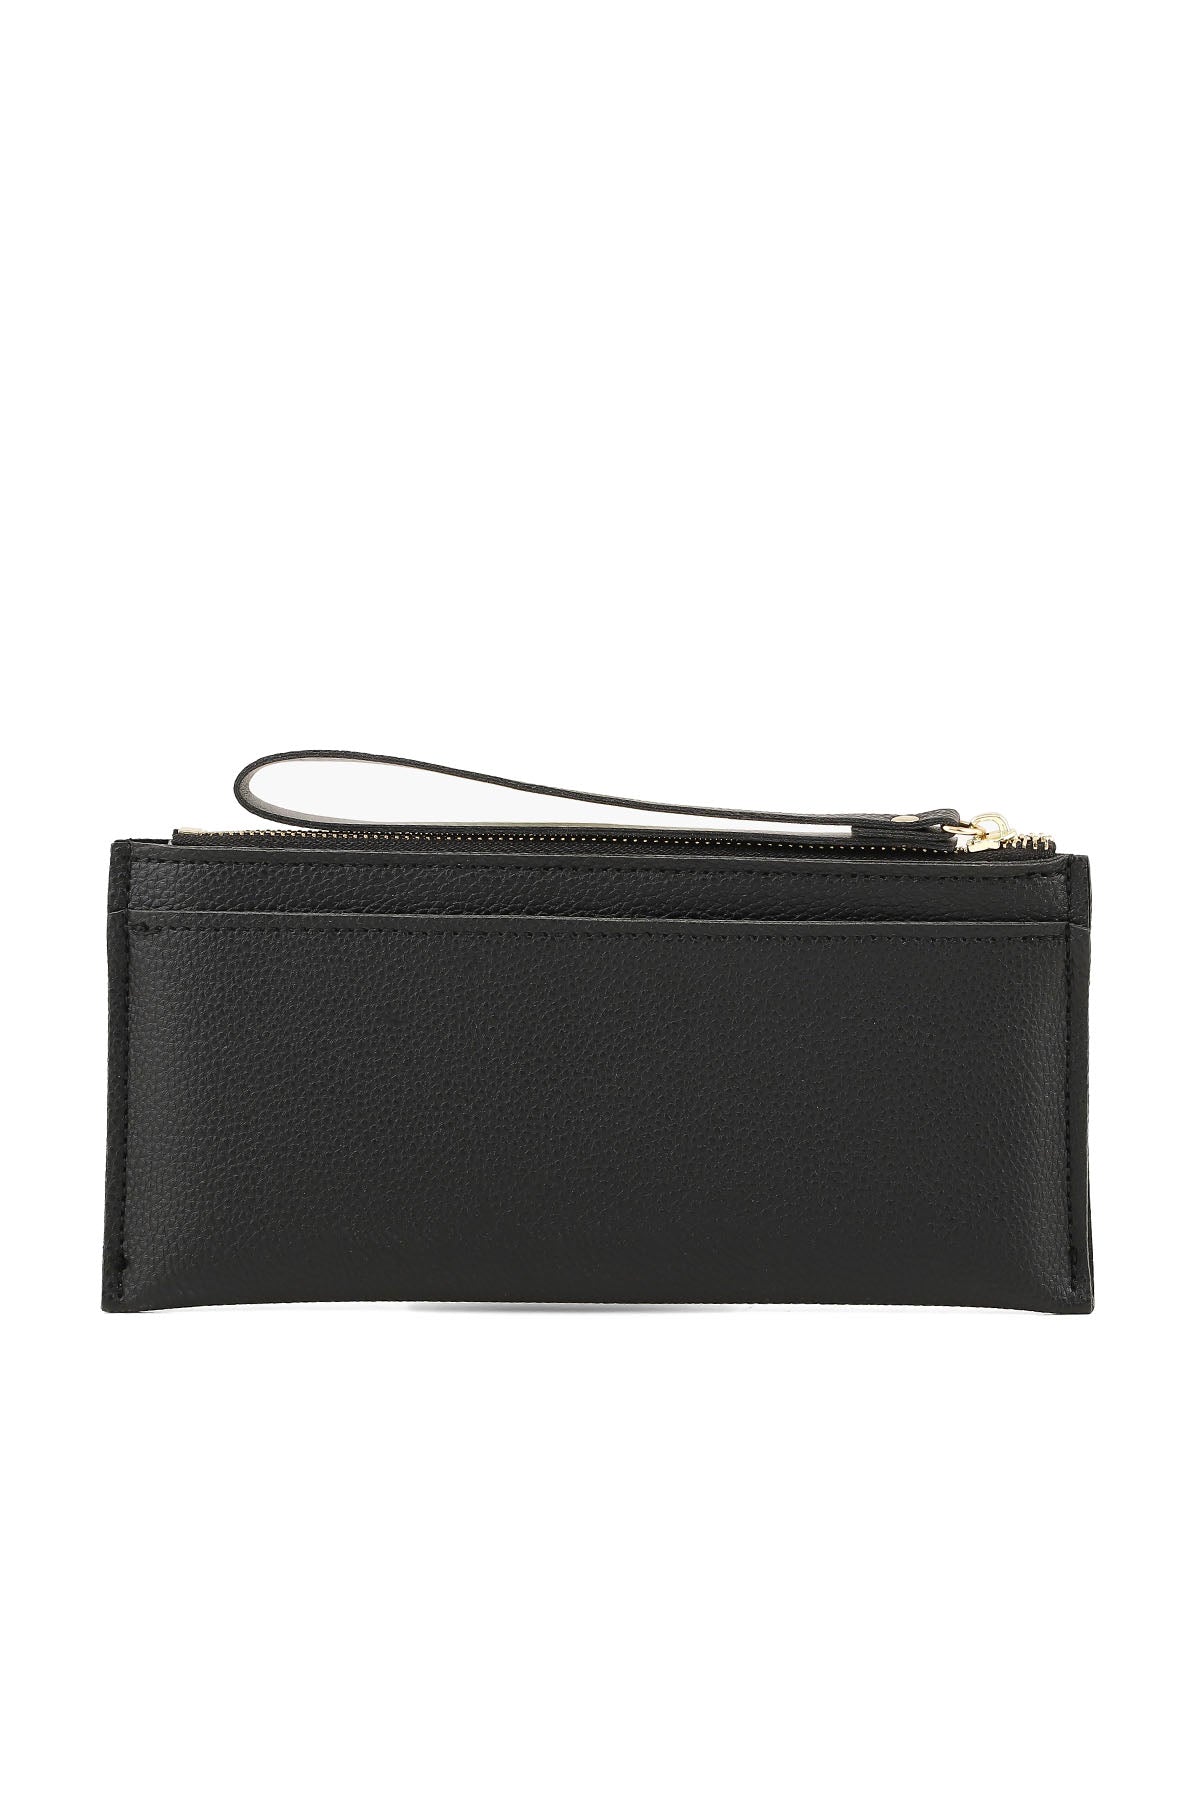 Wristlet Wallet B26044-Black